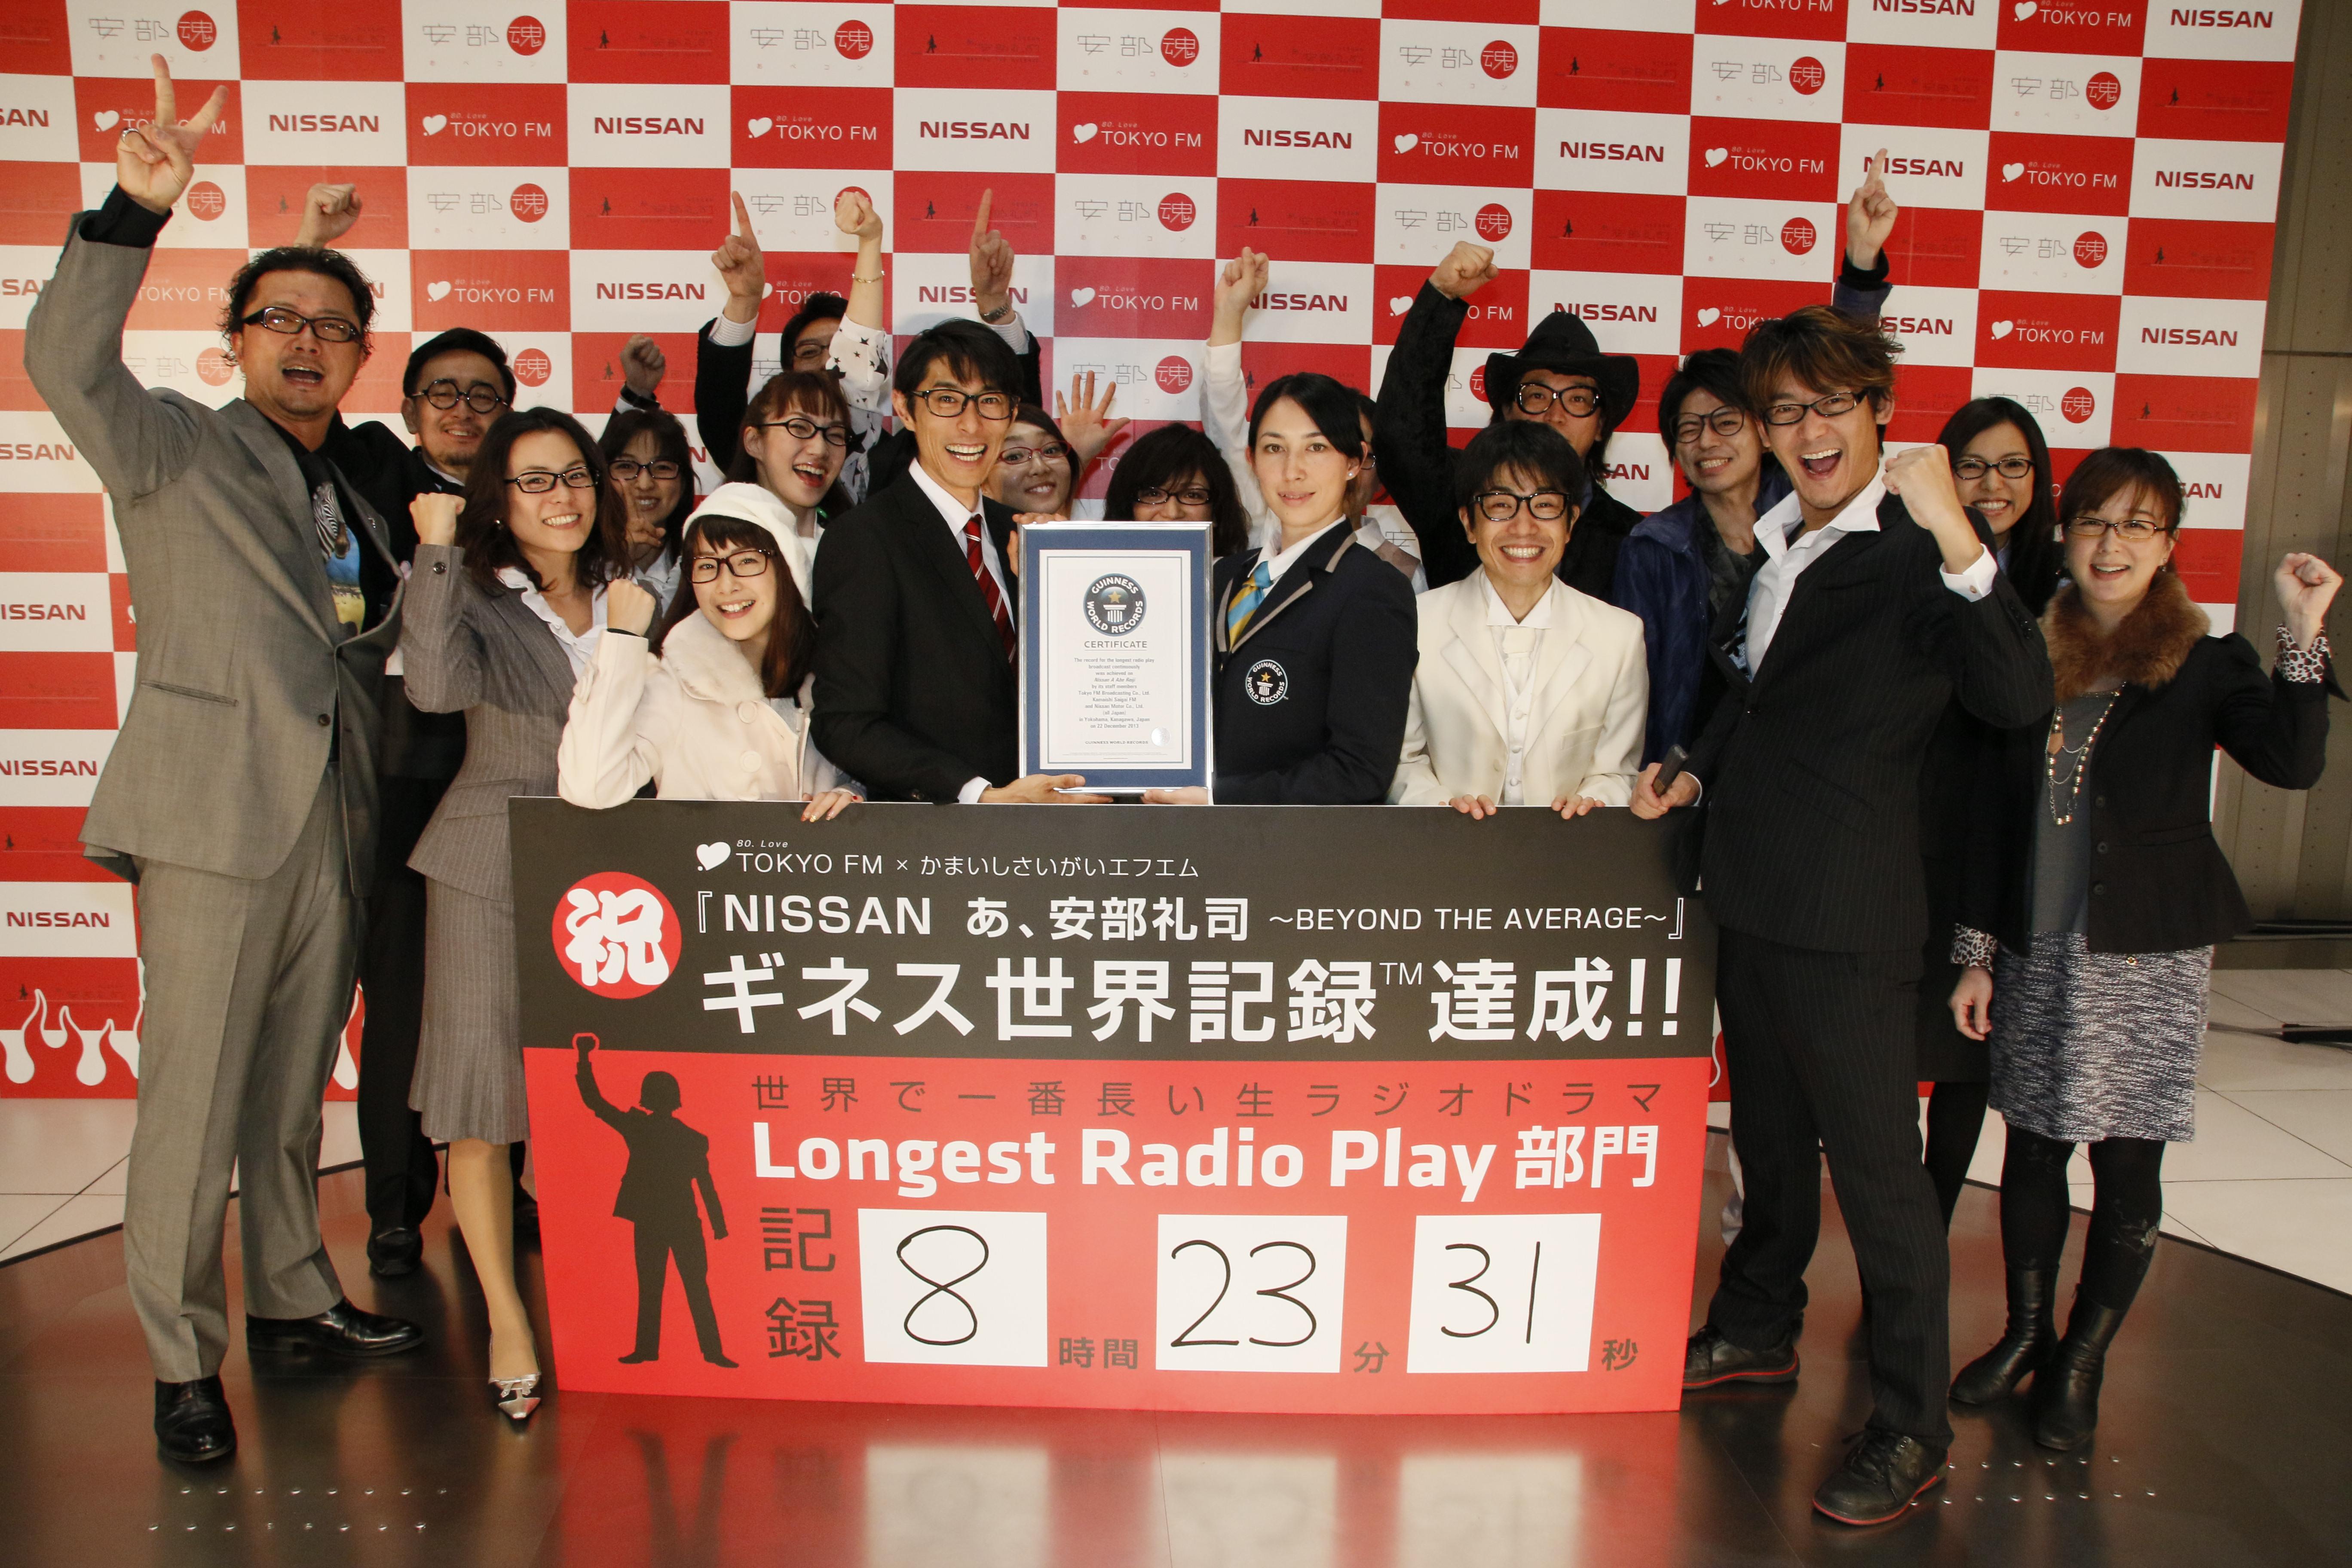 Tokyofm Nissan あ 安部礼司 と かまいしさいがいエフエム が 世界で一番長い 生ラジオドラマ 8時間23分31秒でギネス世界記録 達成 Tokyo Fmのプレスリリース